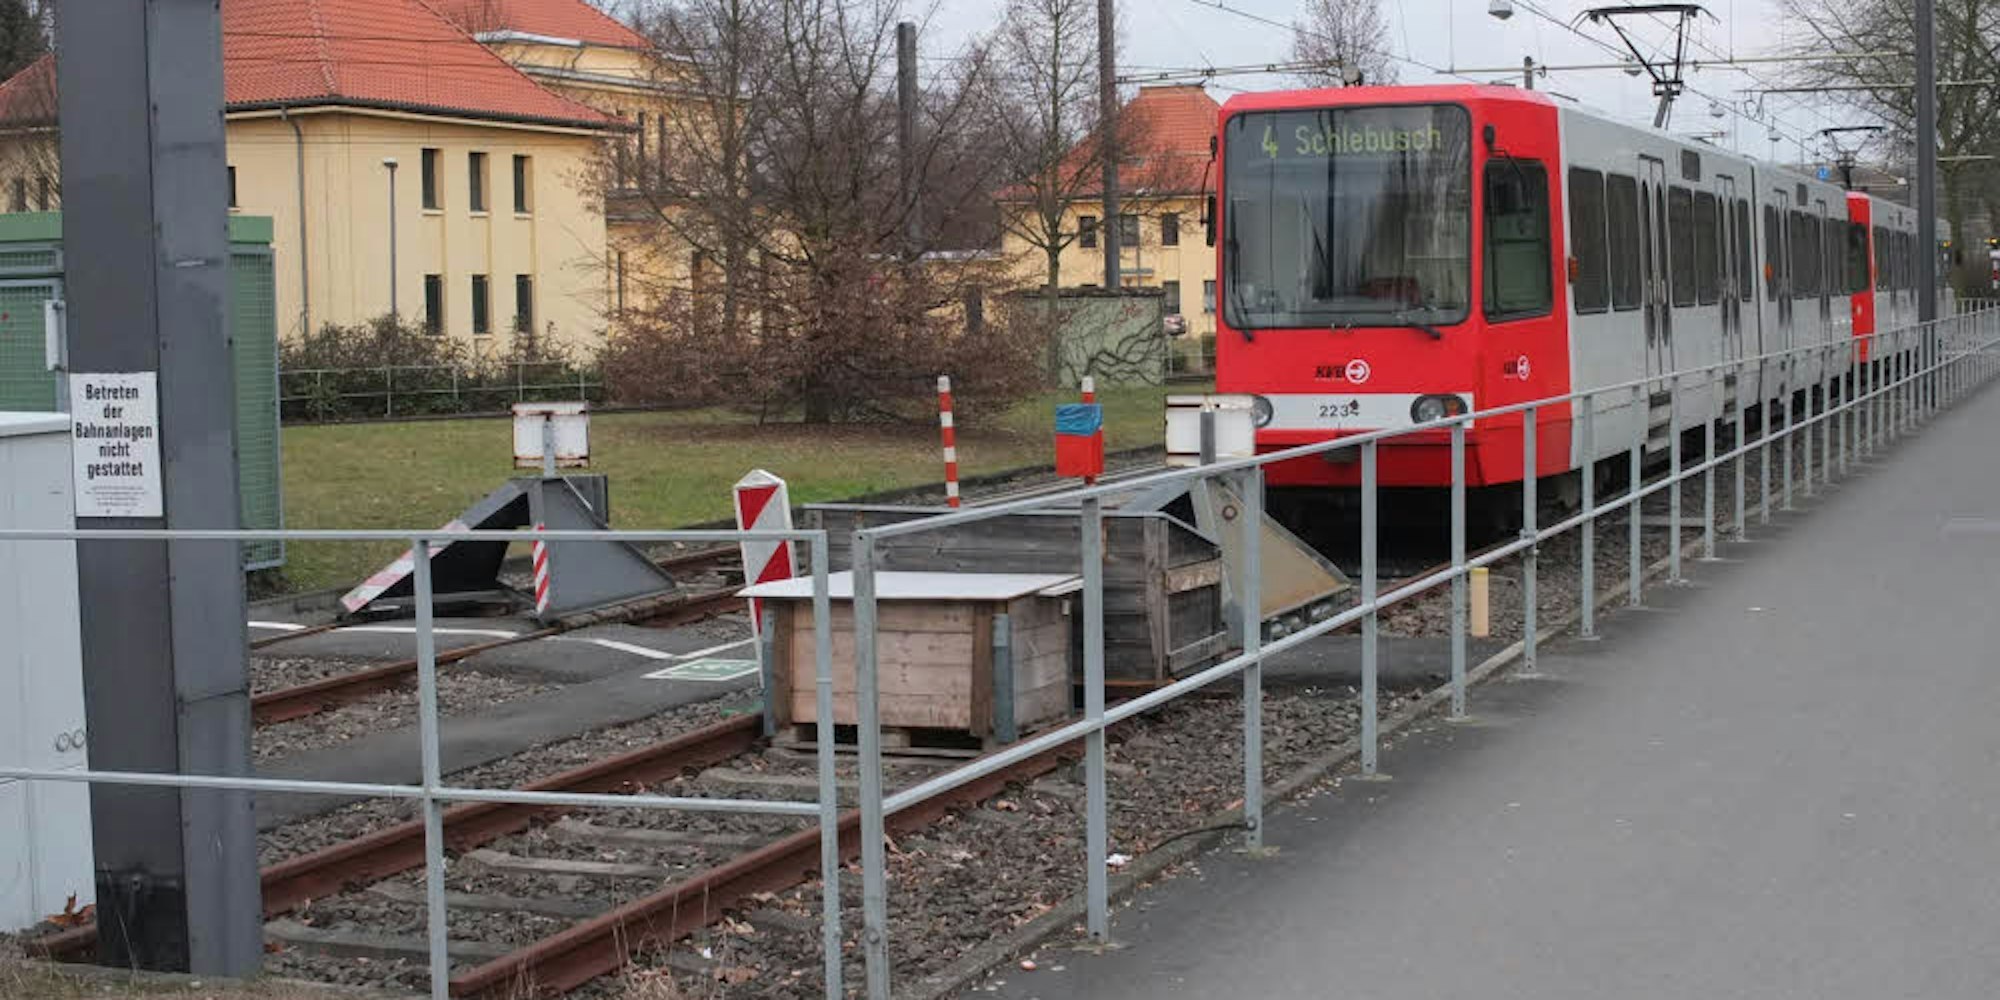 Haltestelle Bocklemünd der Linie 4 – v on hier aus könnte es weitergehen bis nach Widdersdorf oder Brauweiler.